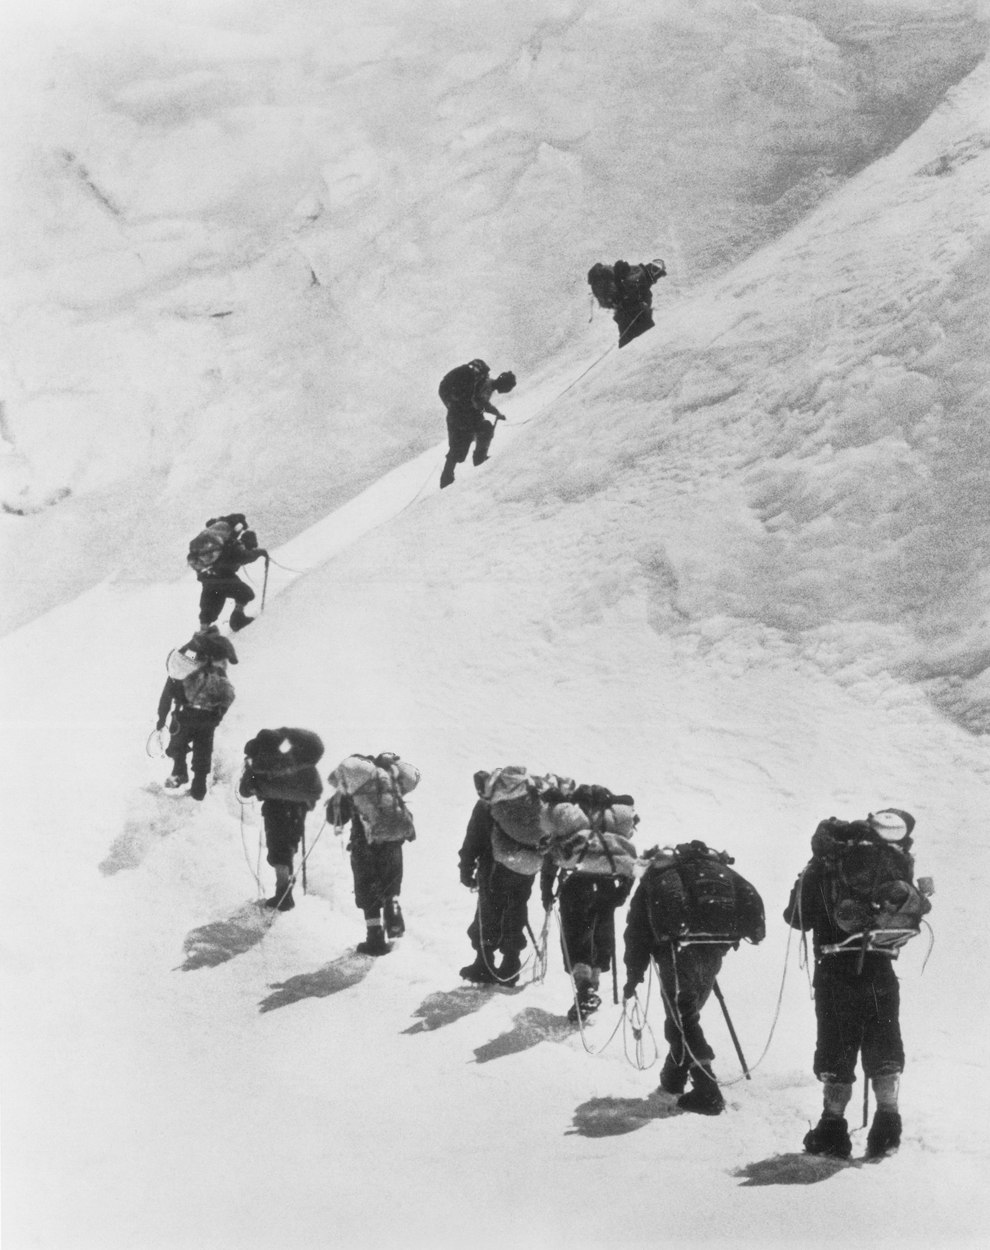 Новозеландец Эдмунд Хиллари с группой восходят на Эверест, 1953 год